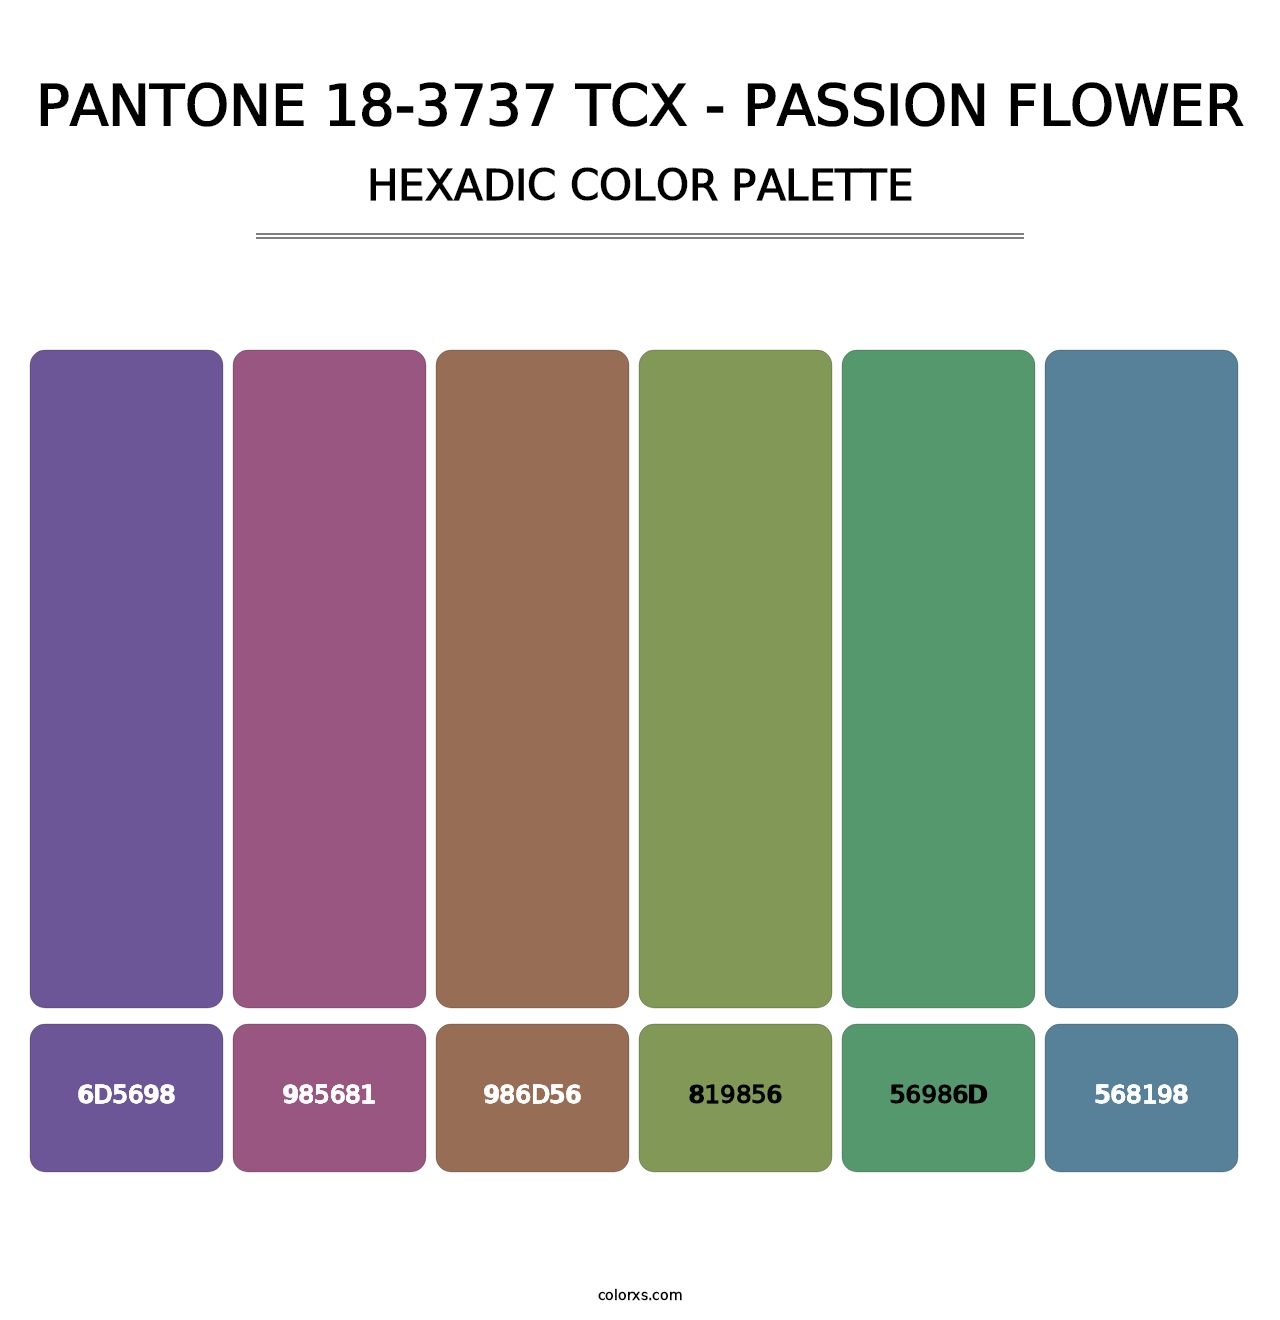 PANTONE 18-3737 TCX - Passion Flower - Hexadic Color Palette